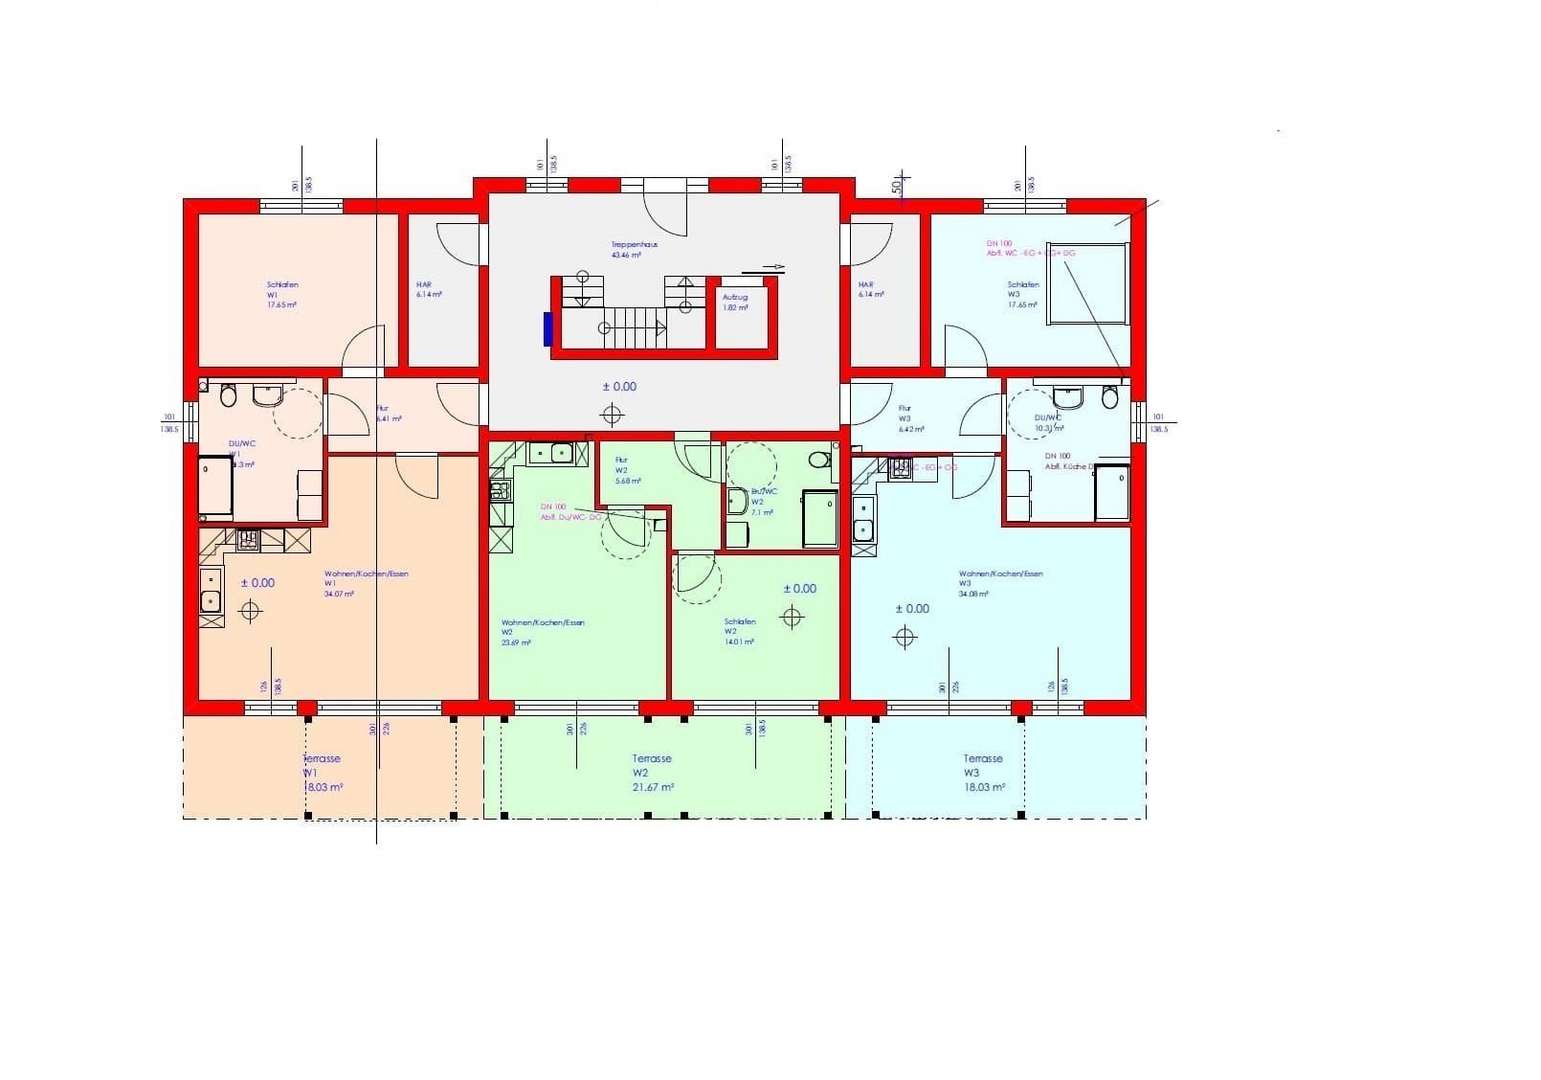 Grundriss Erdgeschoß - Etagenwohnung in 37281 Wanfried mit 60m² kaufen